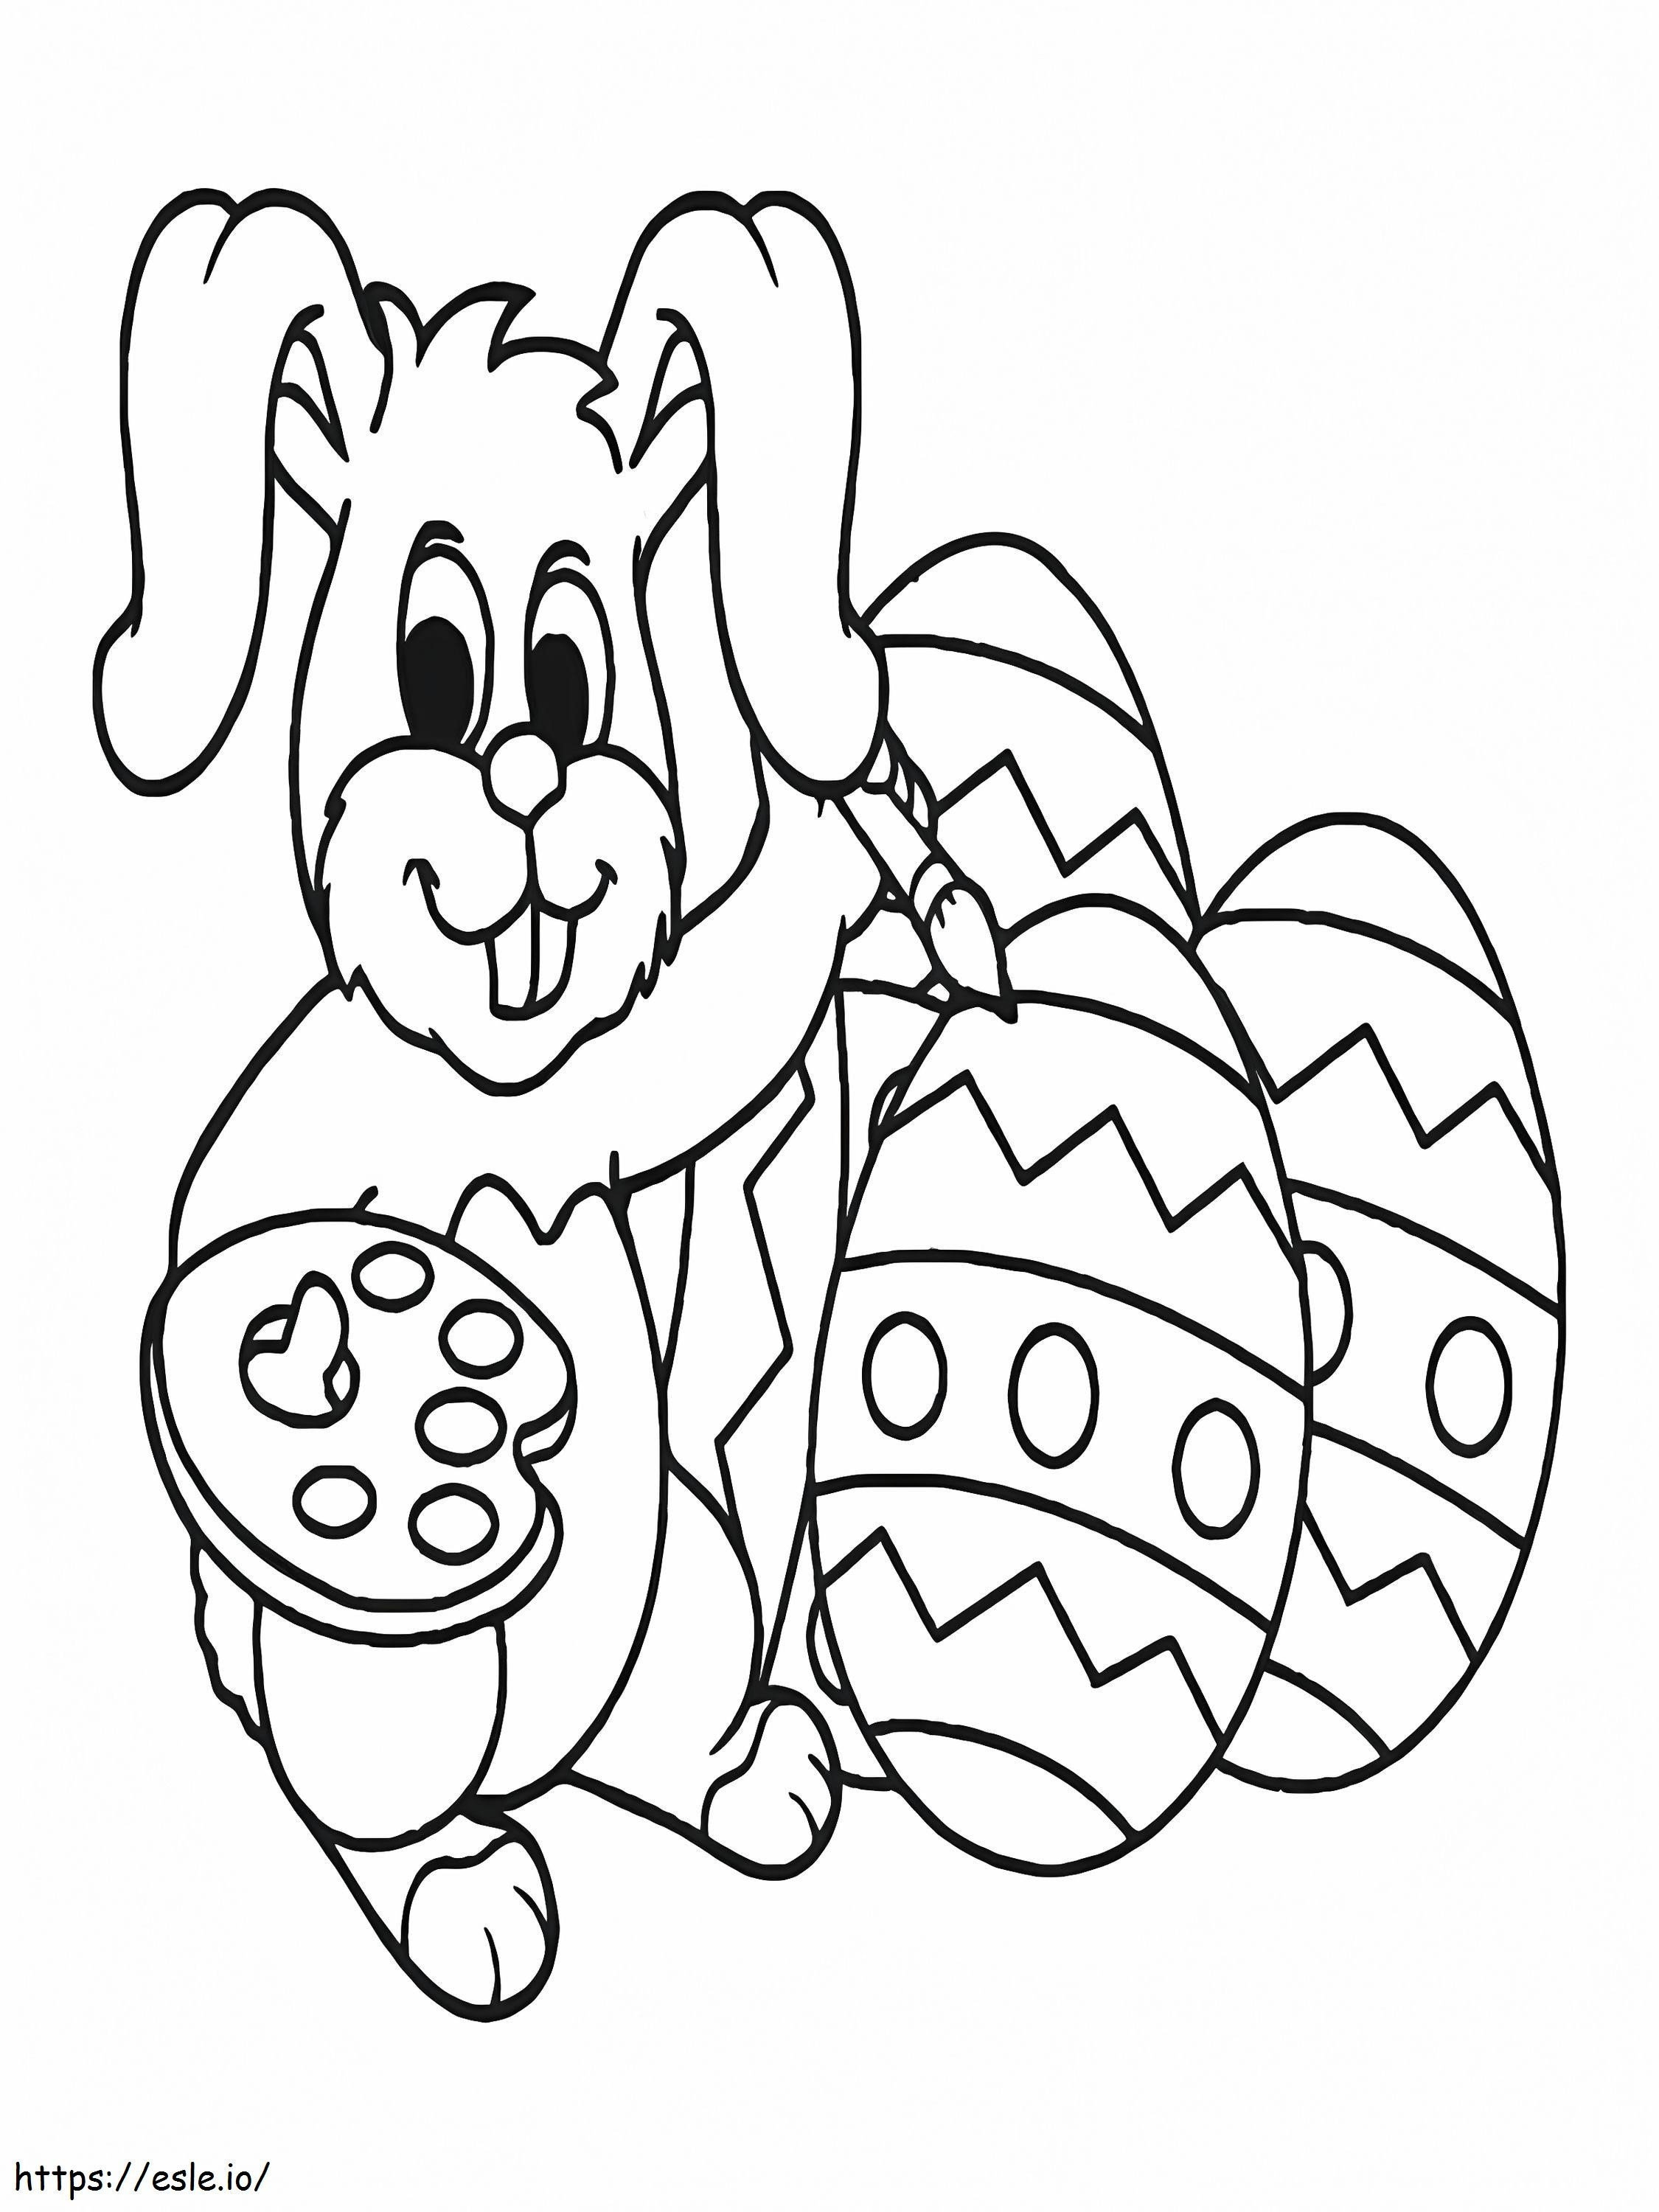 Conejo de Pascua pintando huevos para colorear